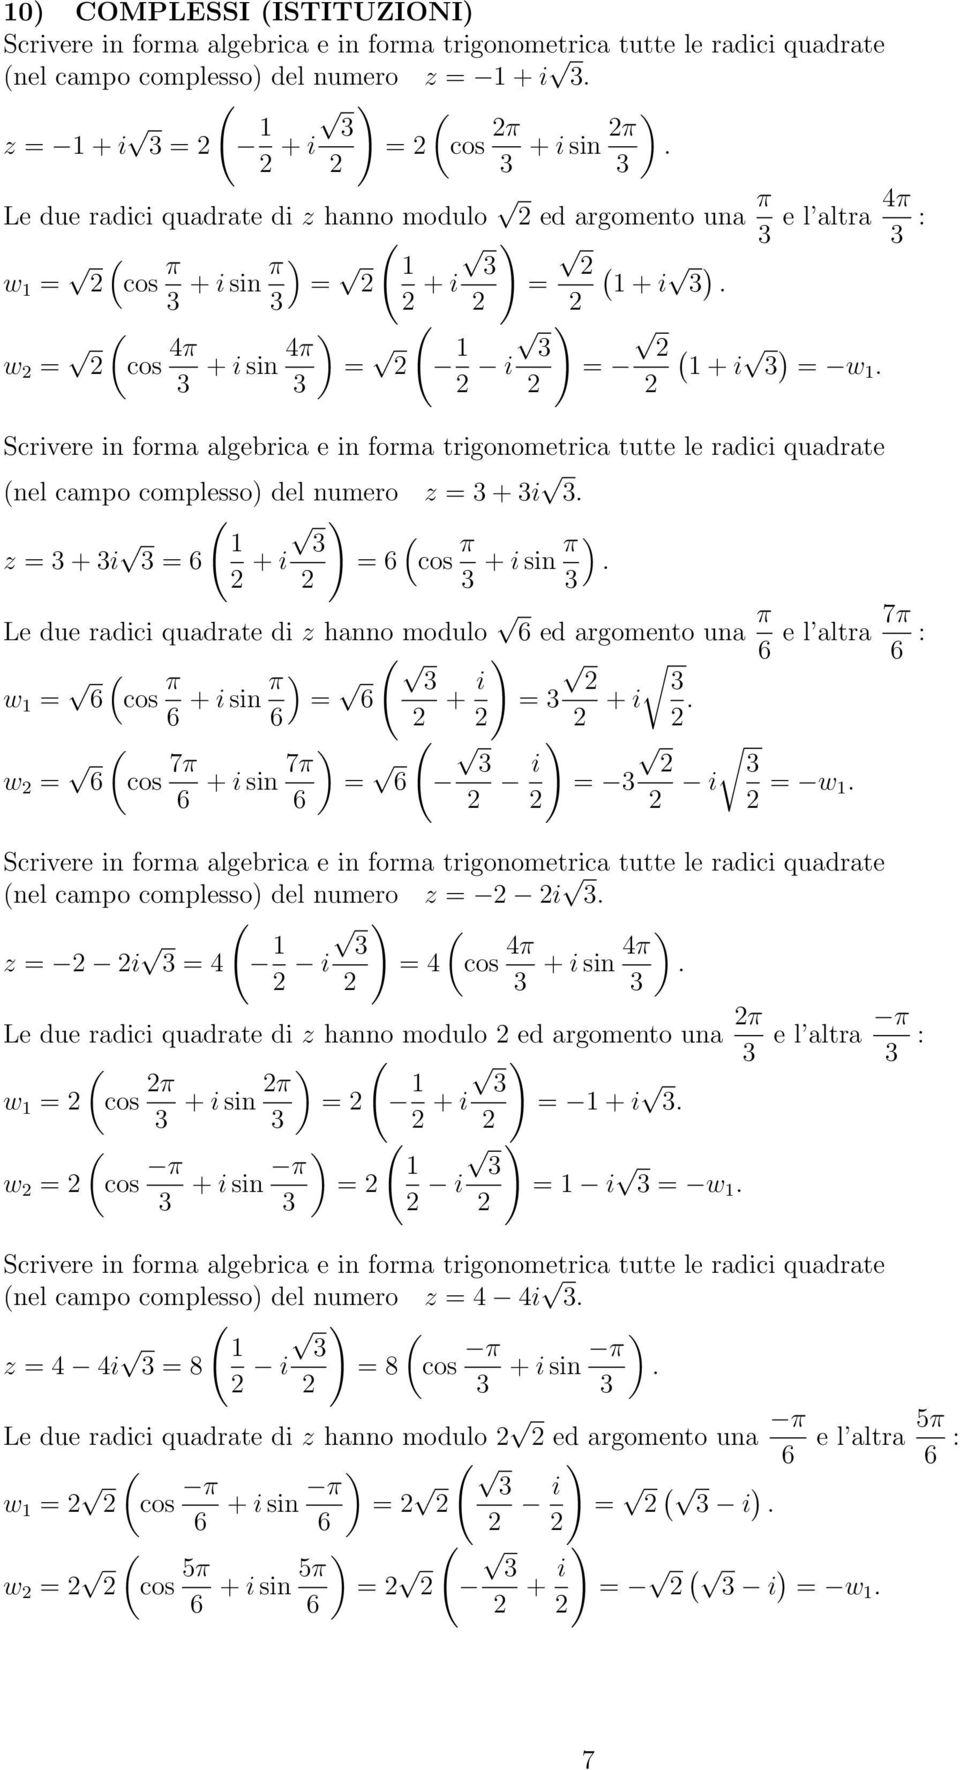 del umero z = + i z = + i = 6 + i = 6 cos π + i si π Le due radici quadrate di z hao modulo 6 ed argometo ua π 6 e l altra 7π 6 : w = 6 cos π 6 + i si π = 6 6 + i = + i w = 6 cos 7π 6 + i si 7π = 6 6